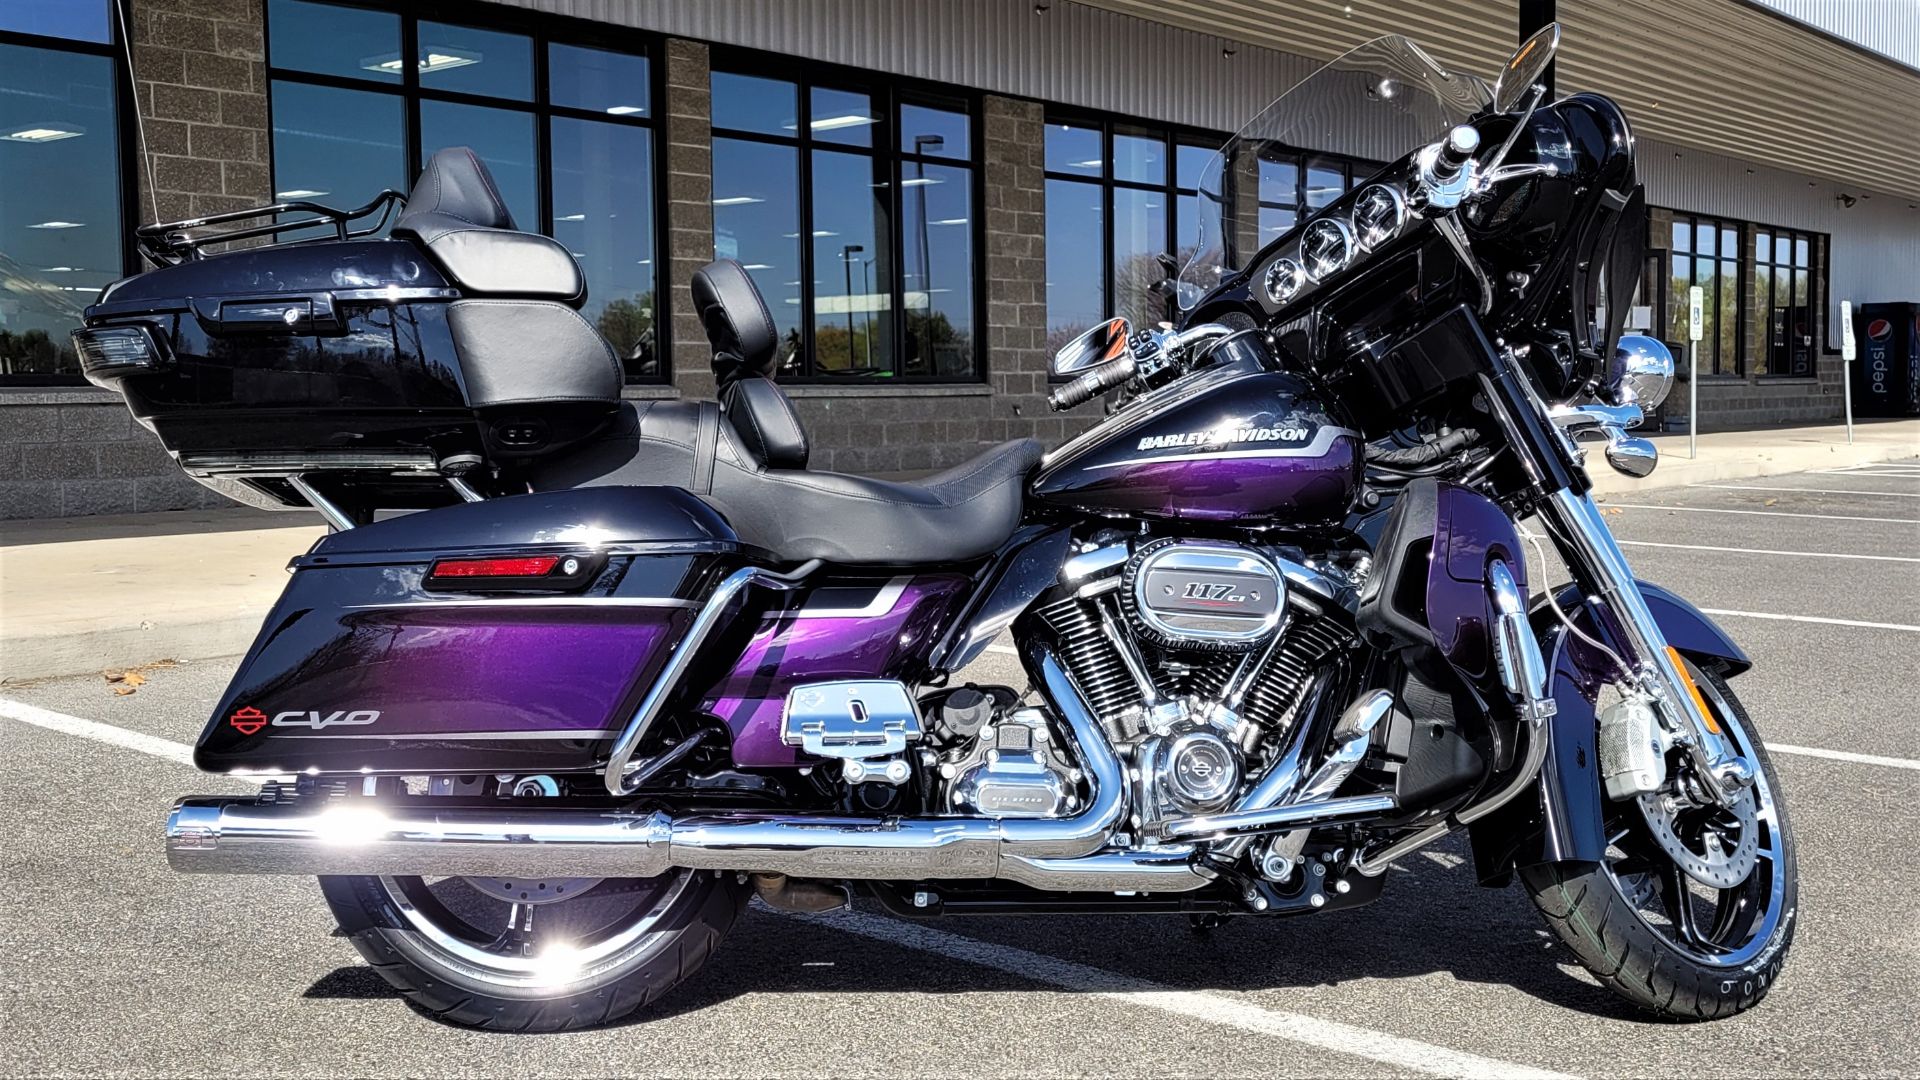 New 2021 Harley Davidson Cvo Limited Royal Purple Fade Royal Black Motorcycles In Yakima Wa 953761